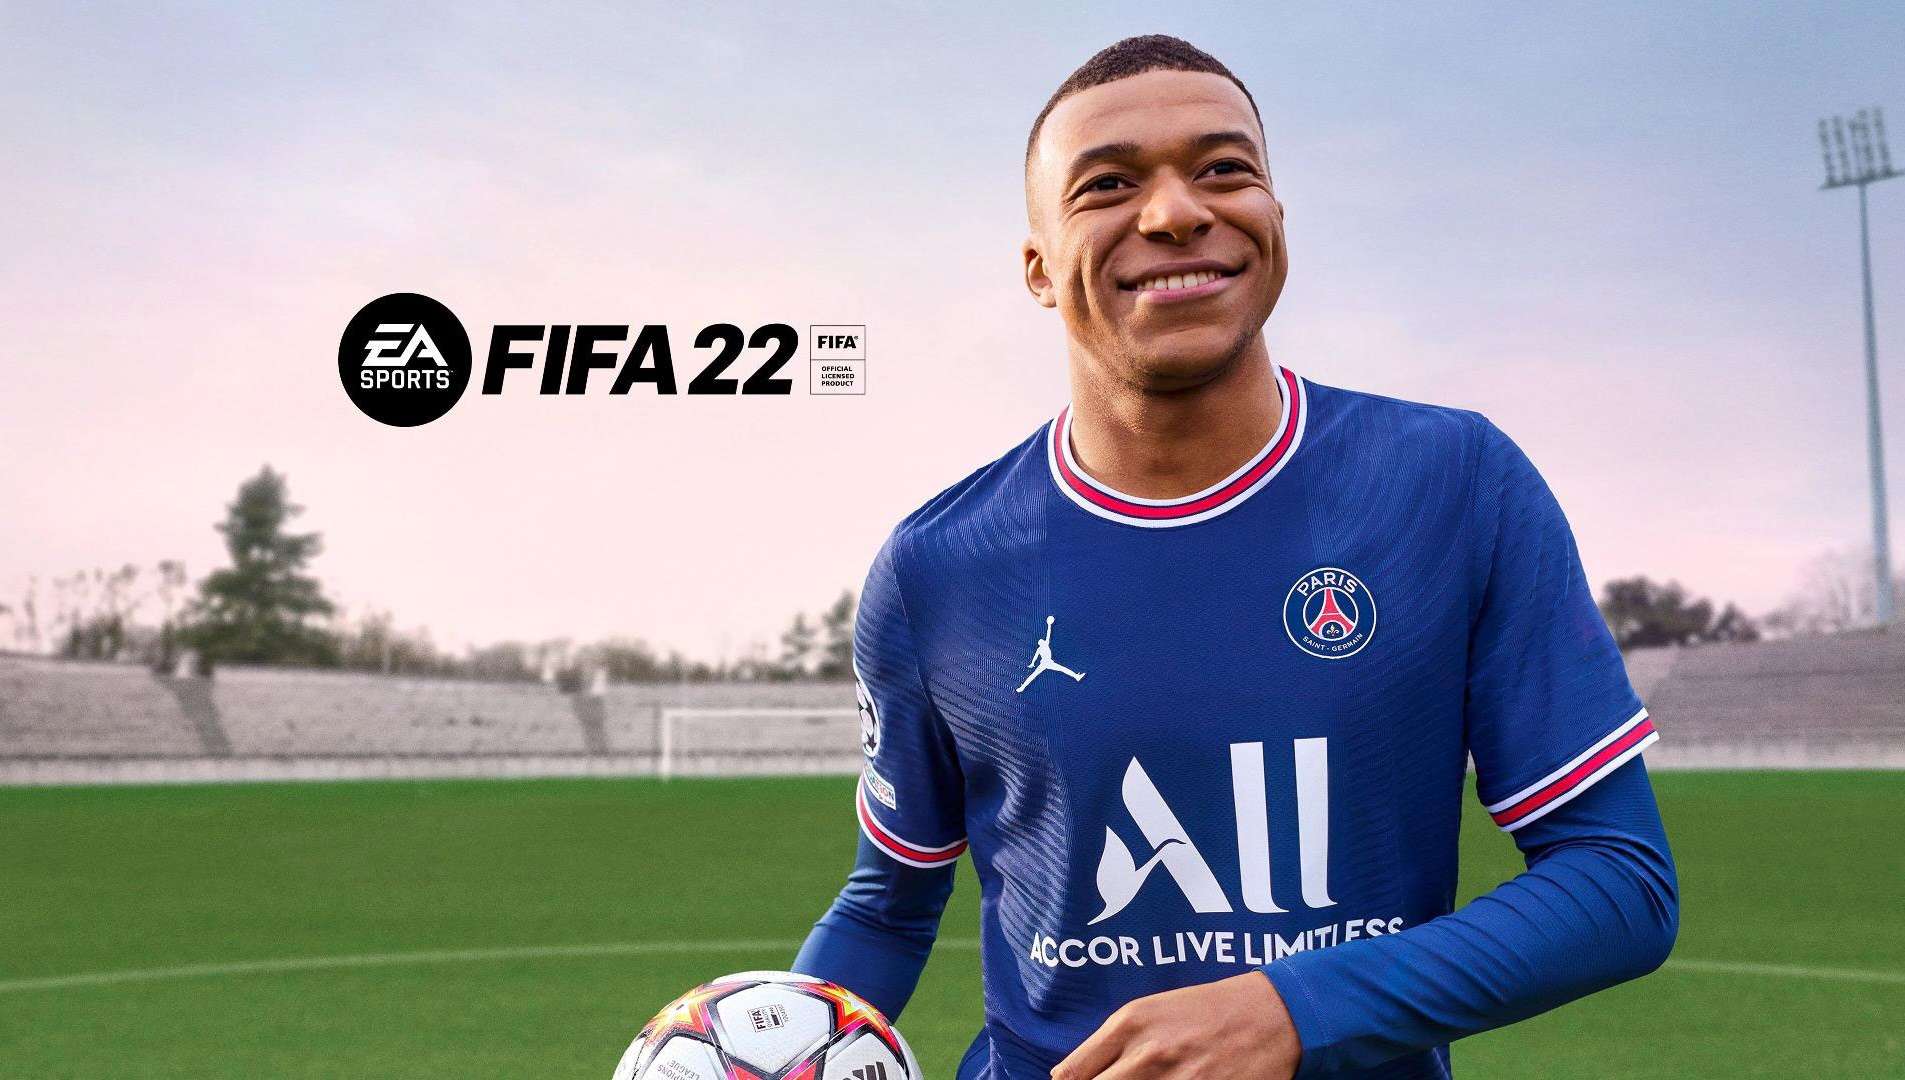 FIFA 22 vuelve a dominar una lista semanal de ventas en España